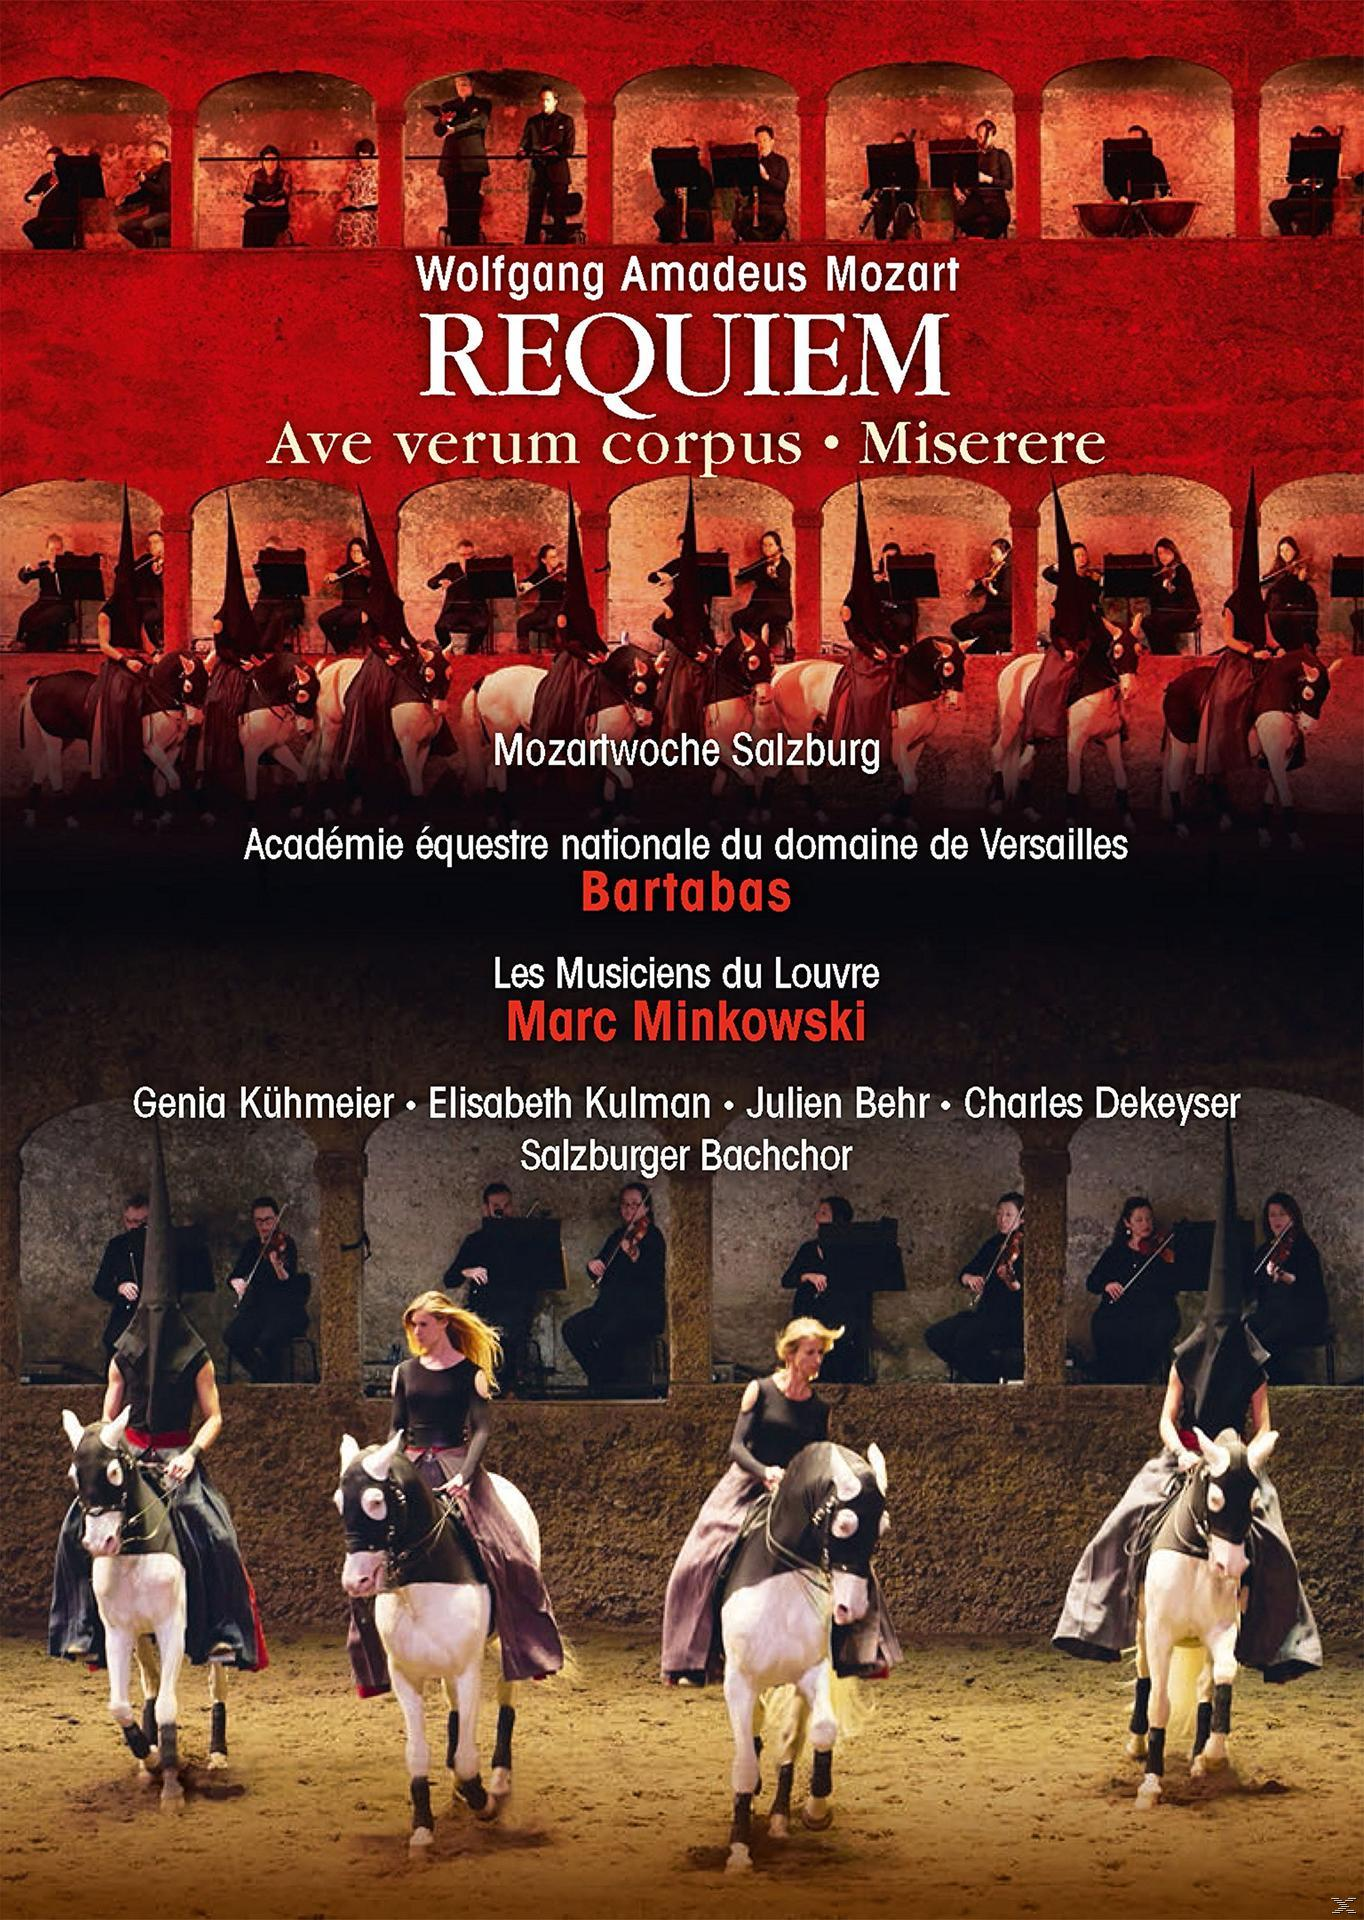 Versailles, VARIOUS, Académie Du - Louvre Musiciens Requiem - Les de (DVD) Bachchor, Équestre Salzburger